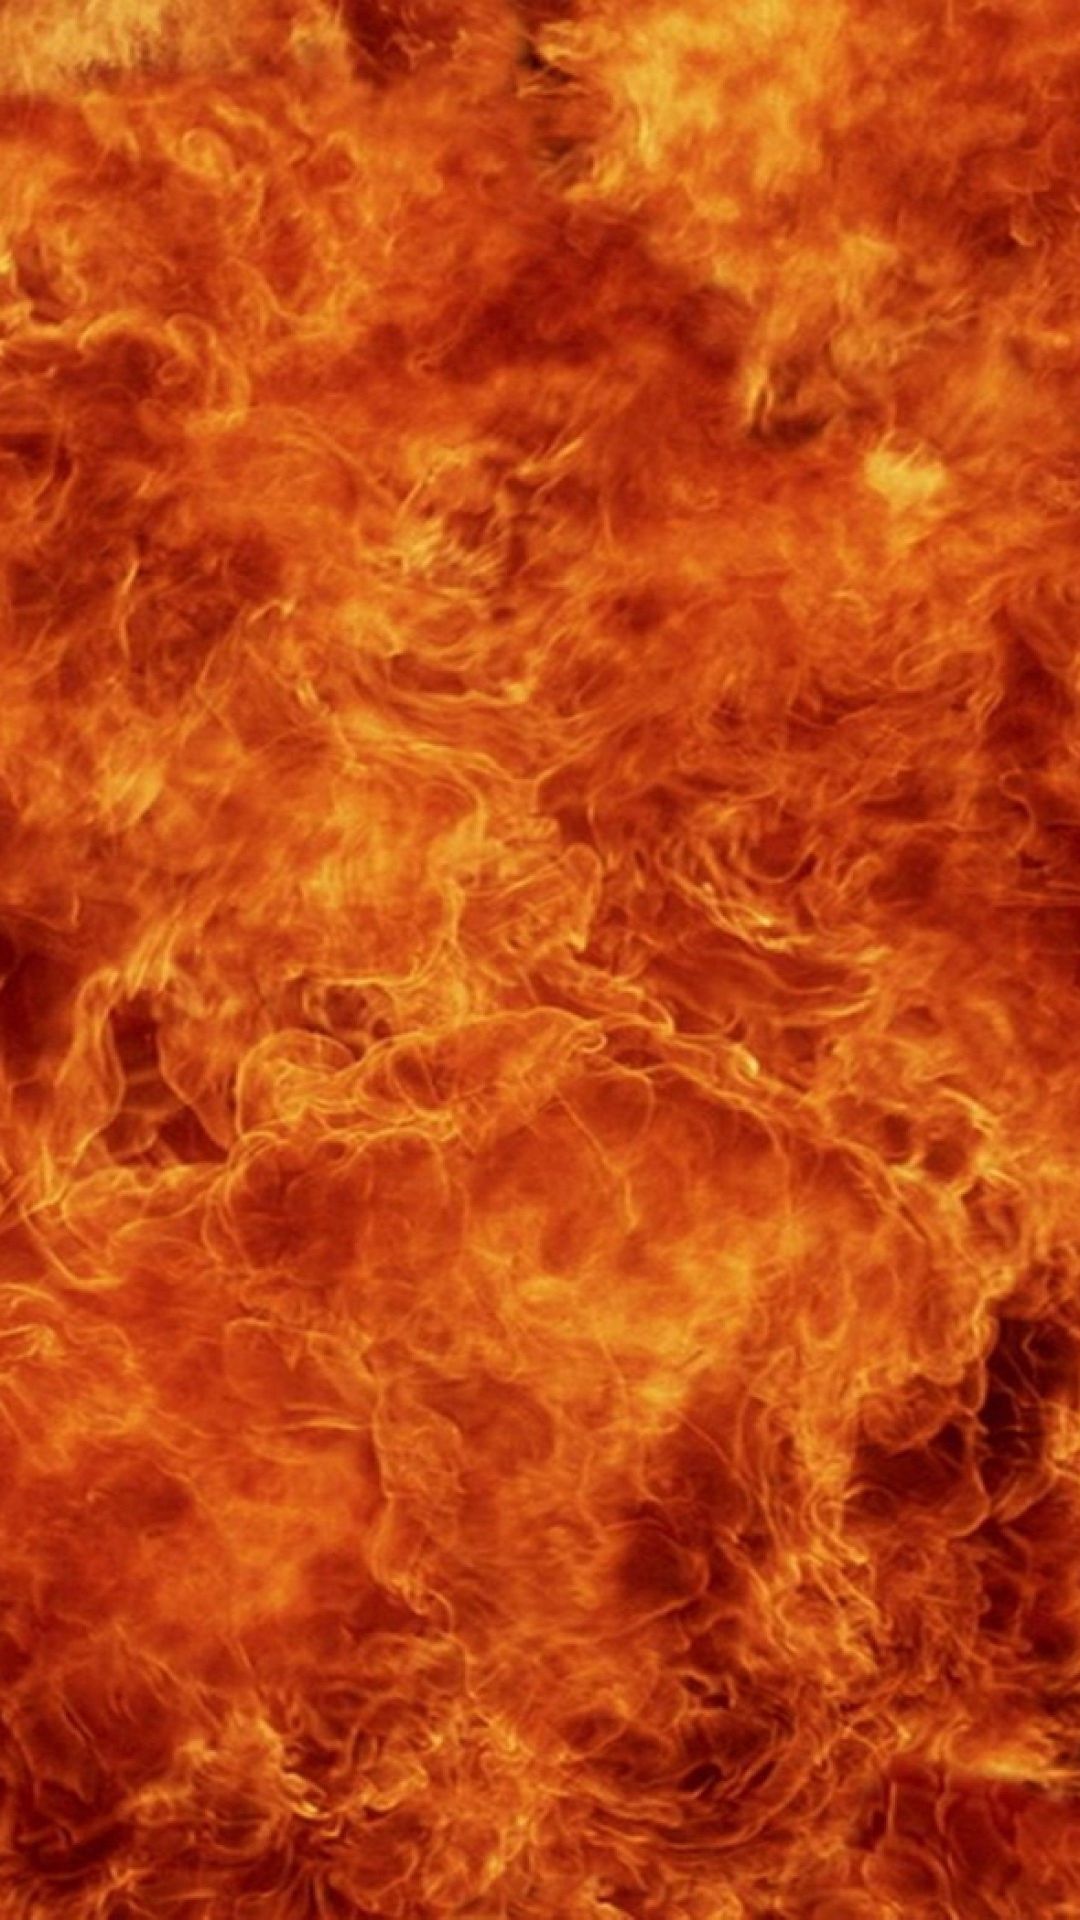 A close up of a fire - Fire